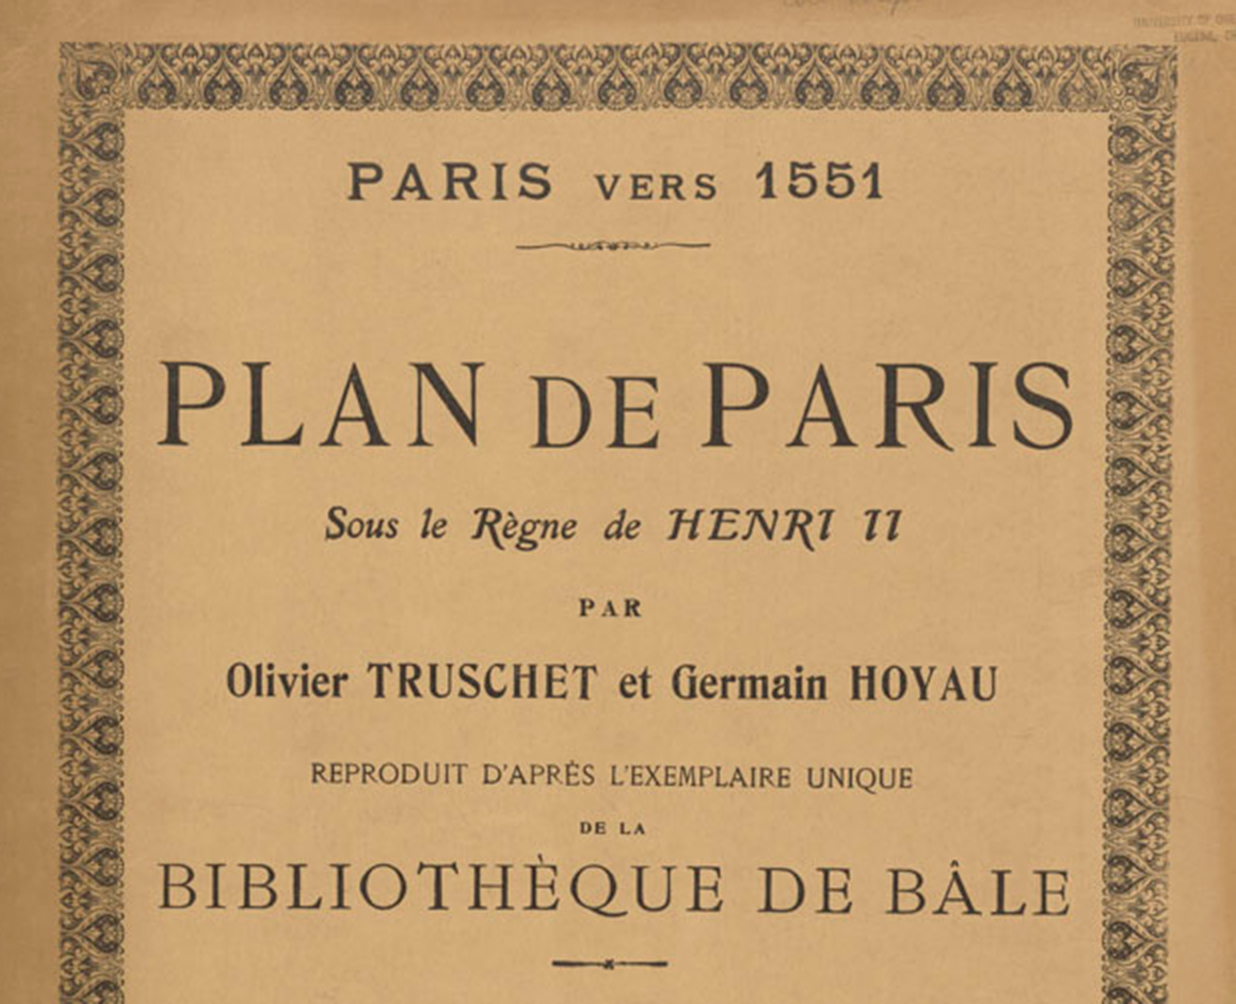 Plan de Paris, UO Design Library Special Collections